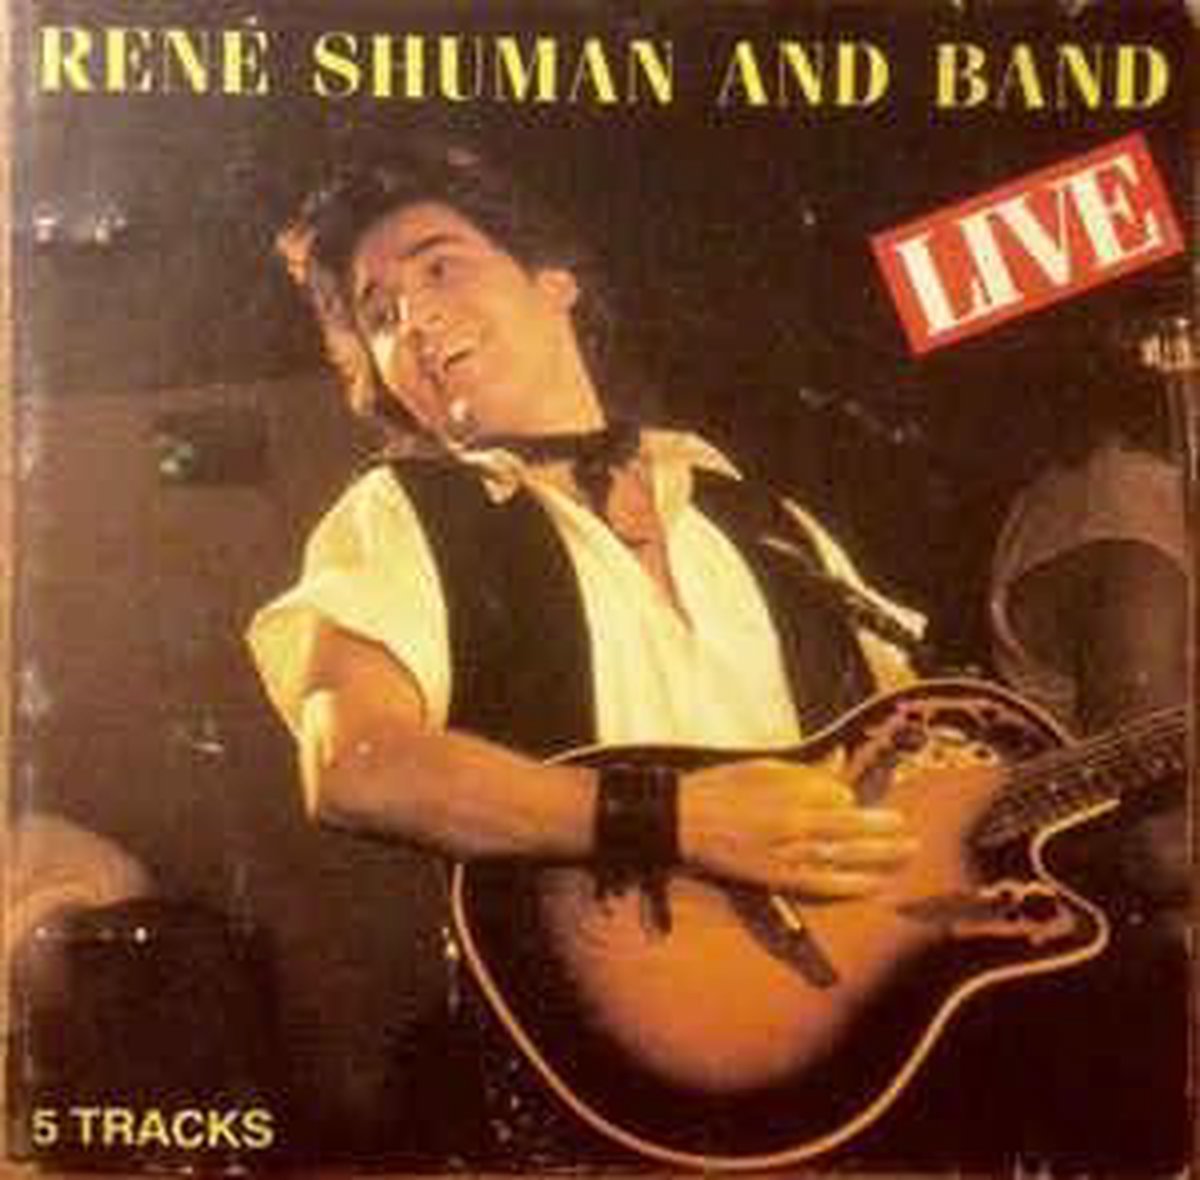 René Shuman And Band ‎– Live - Rene Shuman And Band